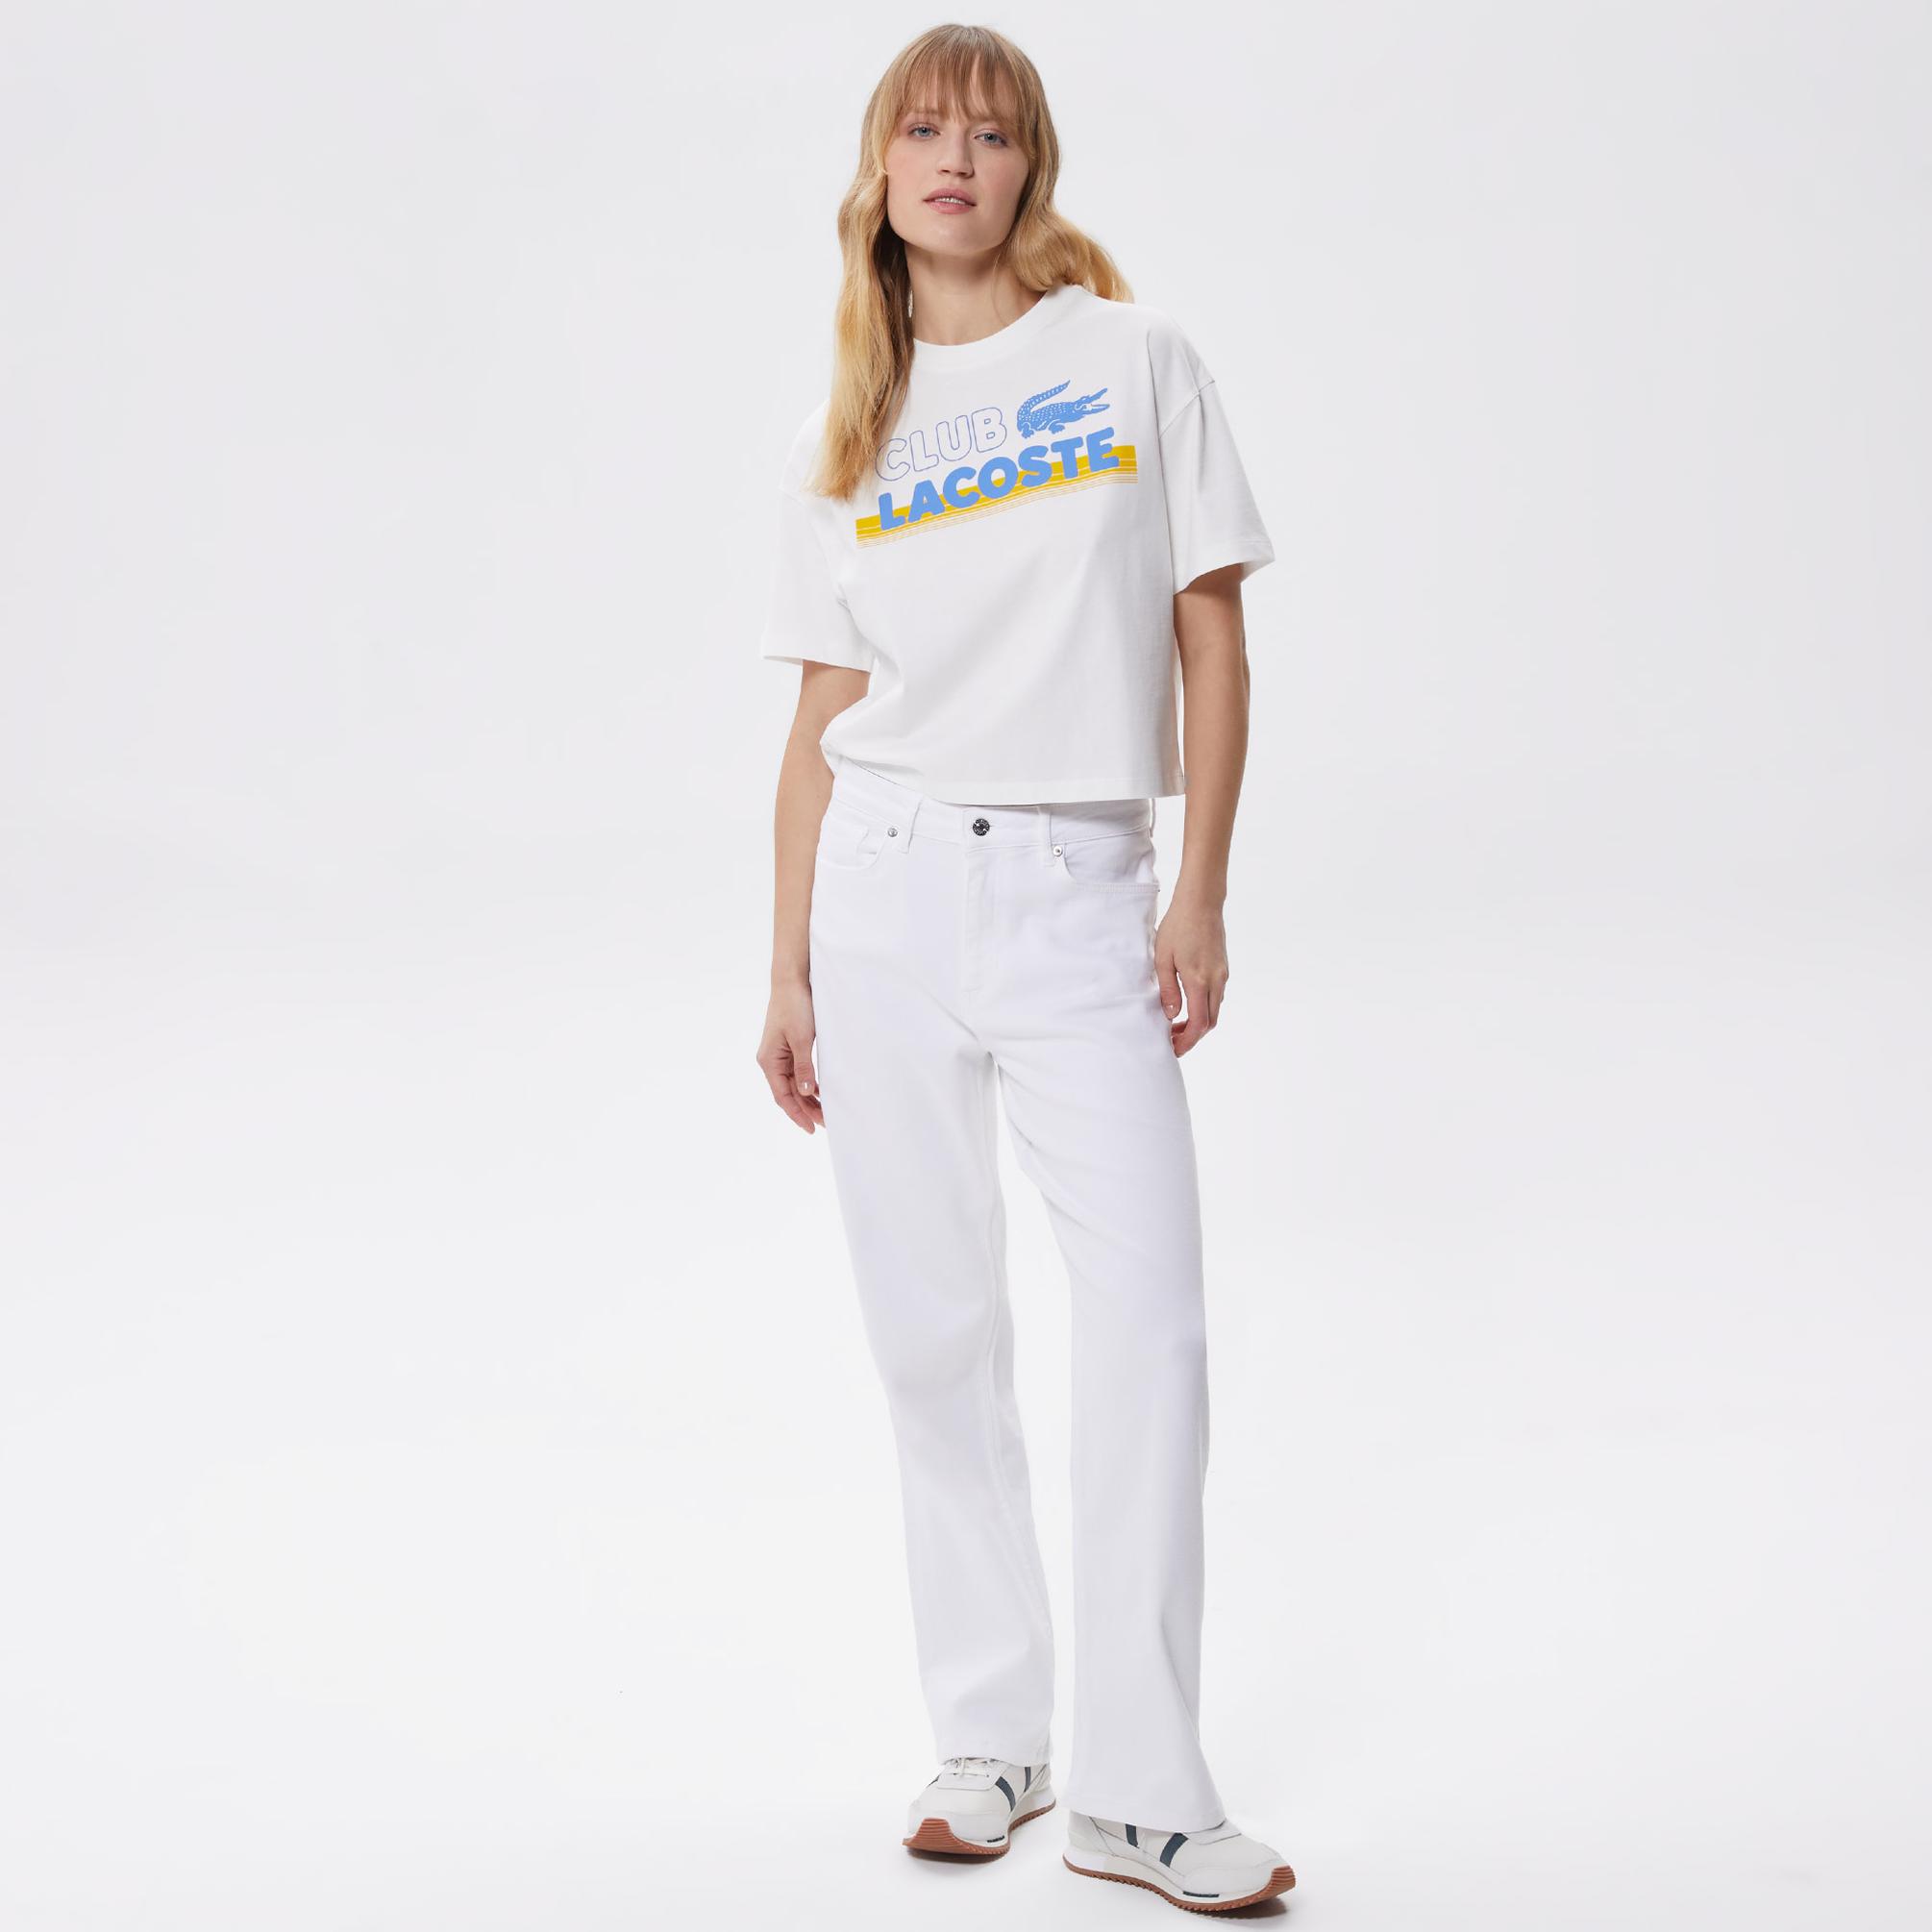  Lacoste Core Kadın Beyaz T-Shirt